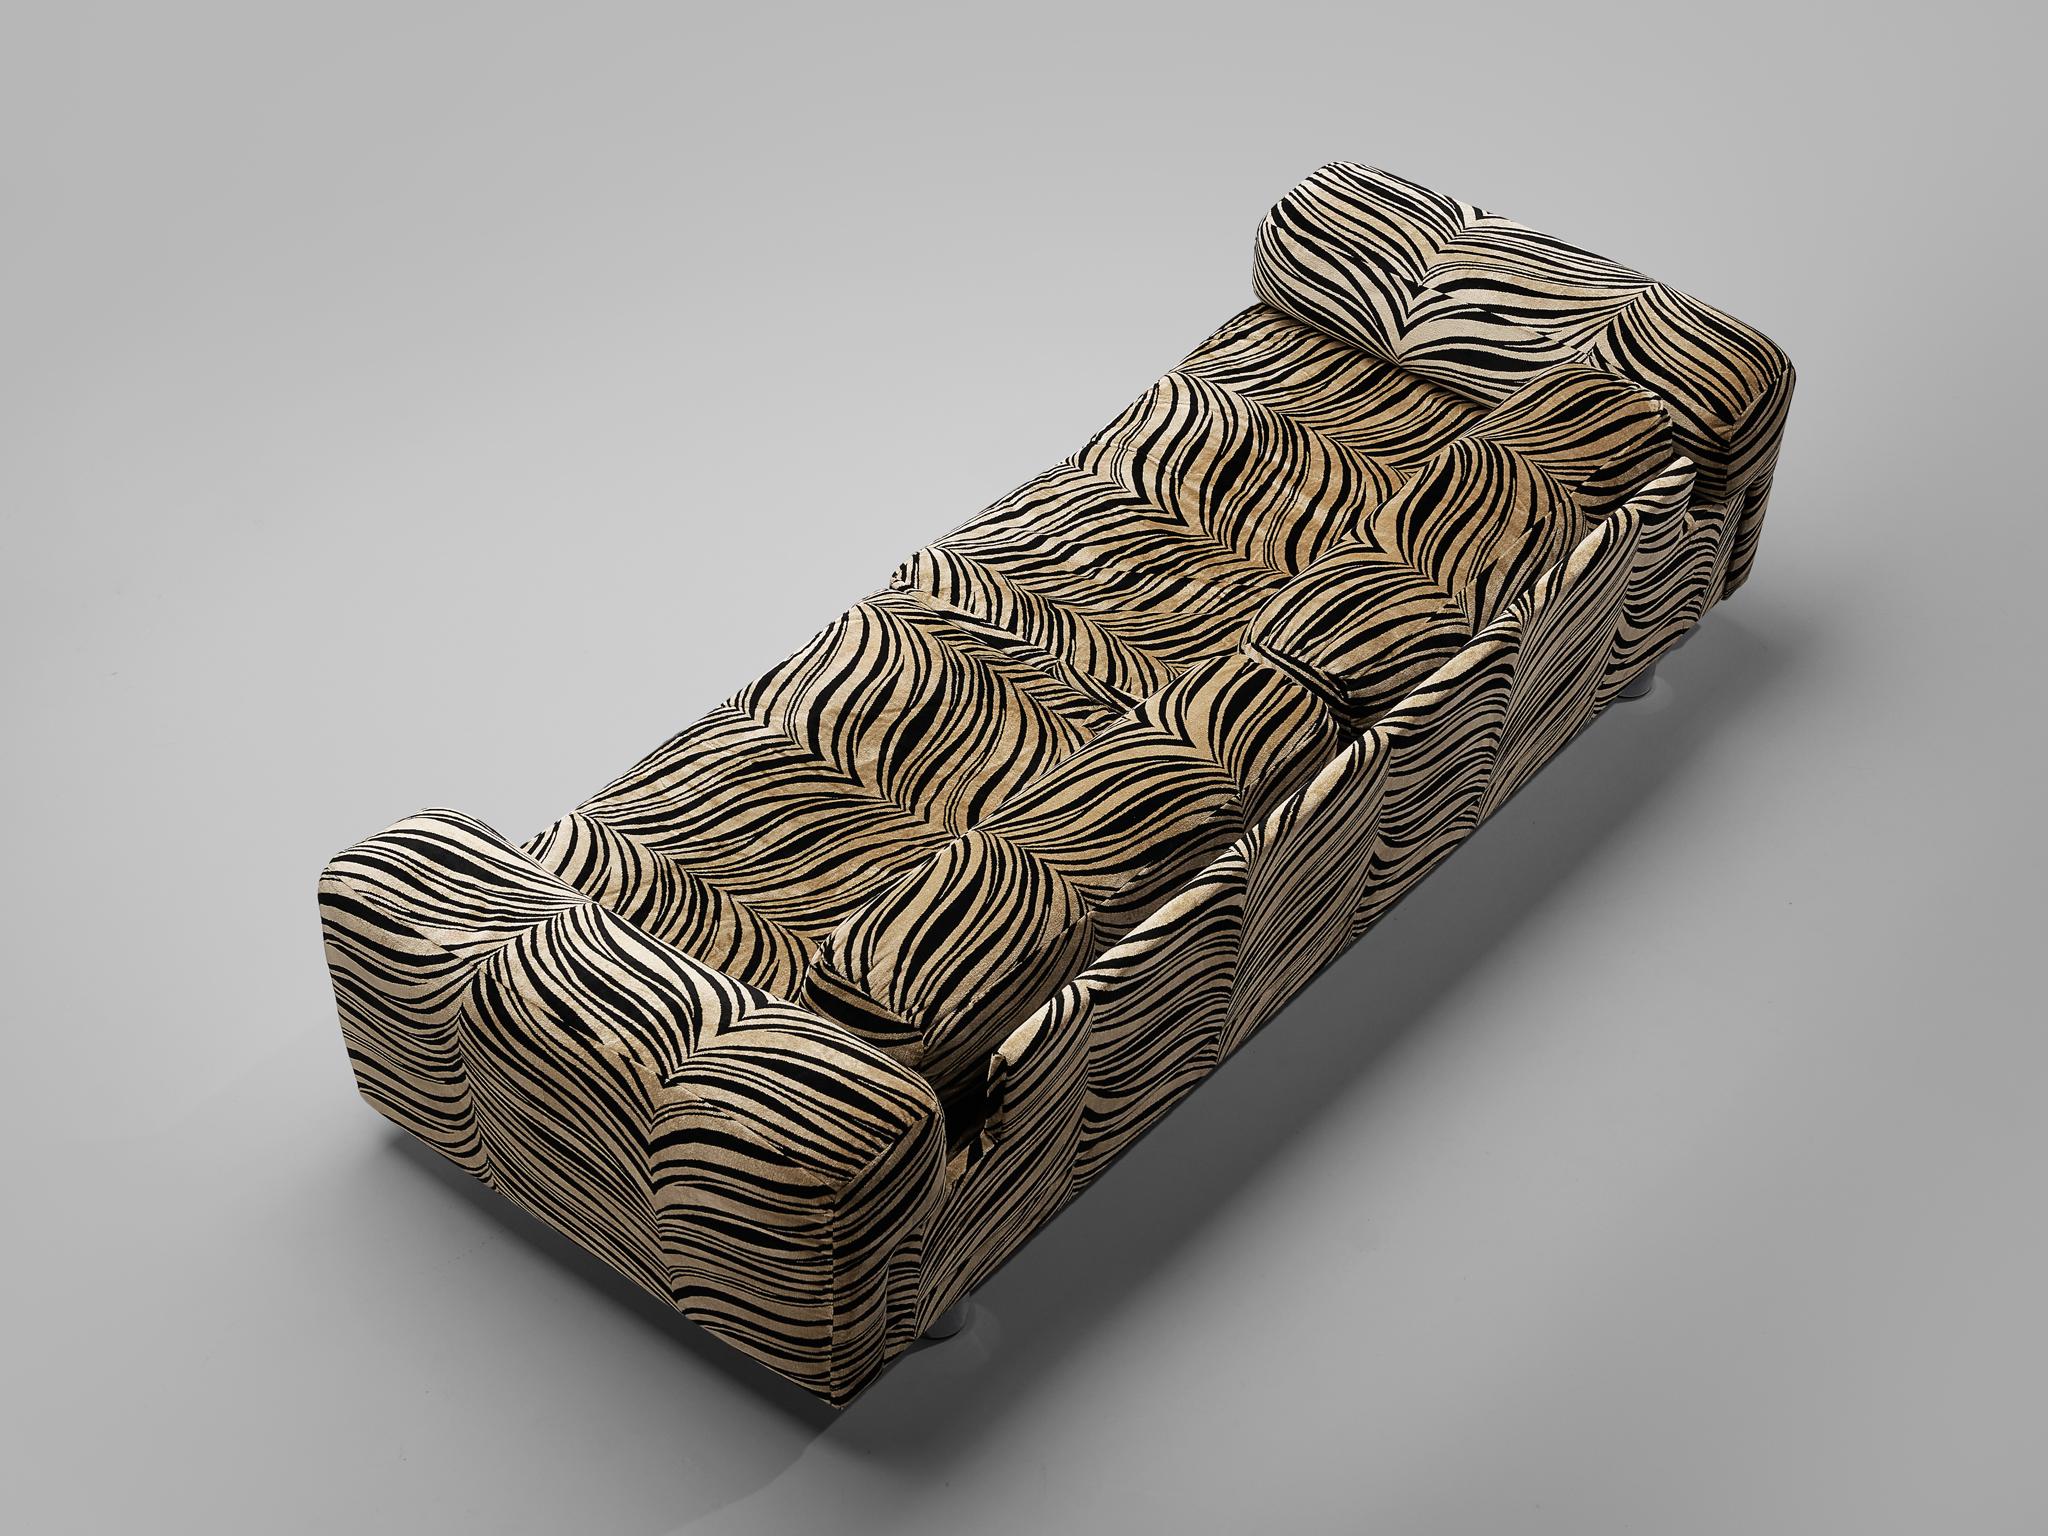 Metal Howard Keith 'Diplomat' Sofa in Original Striped Upholstery